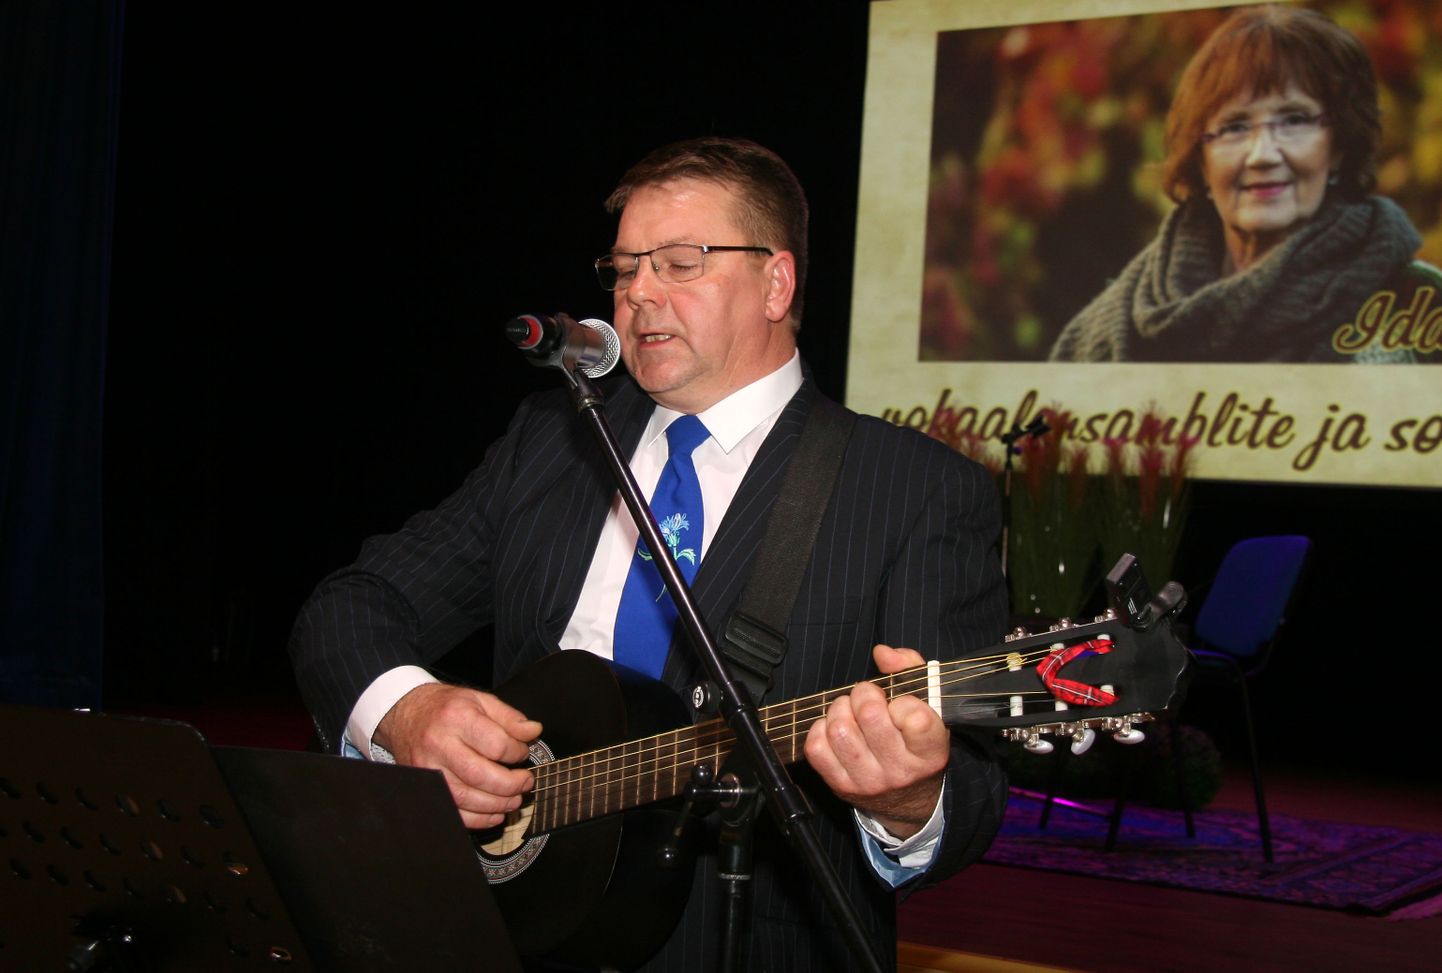 Hannes Konsa võitis sooloesinejana teiste lauljate südame, lisaks sellele laulis ta veel Tammiku segaansamblis ning toetas kitarrimänguga Illuka naisansamblit.